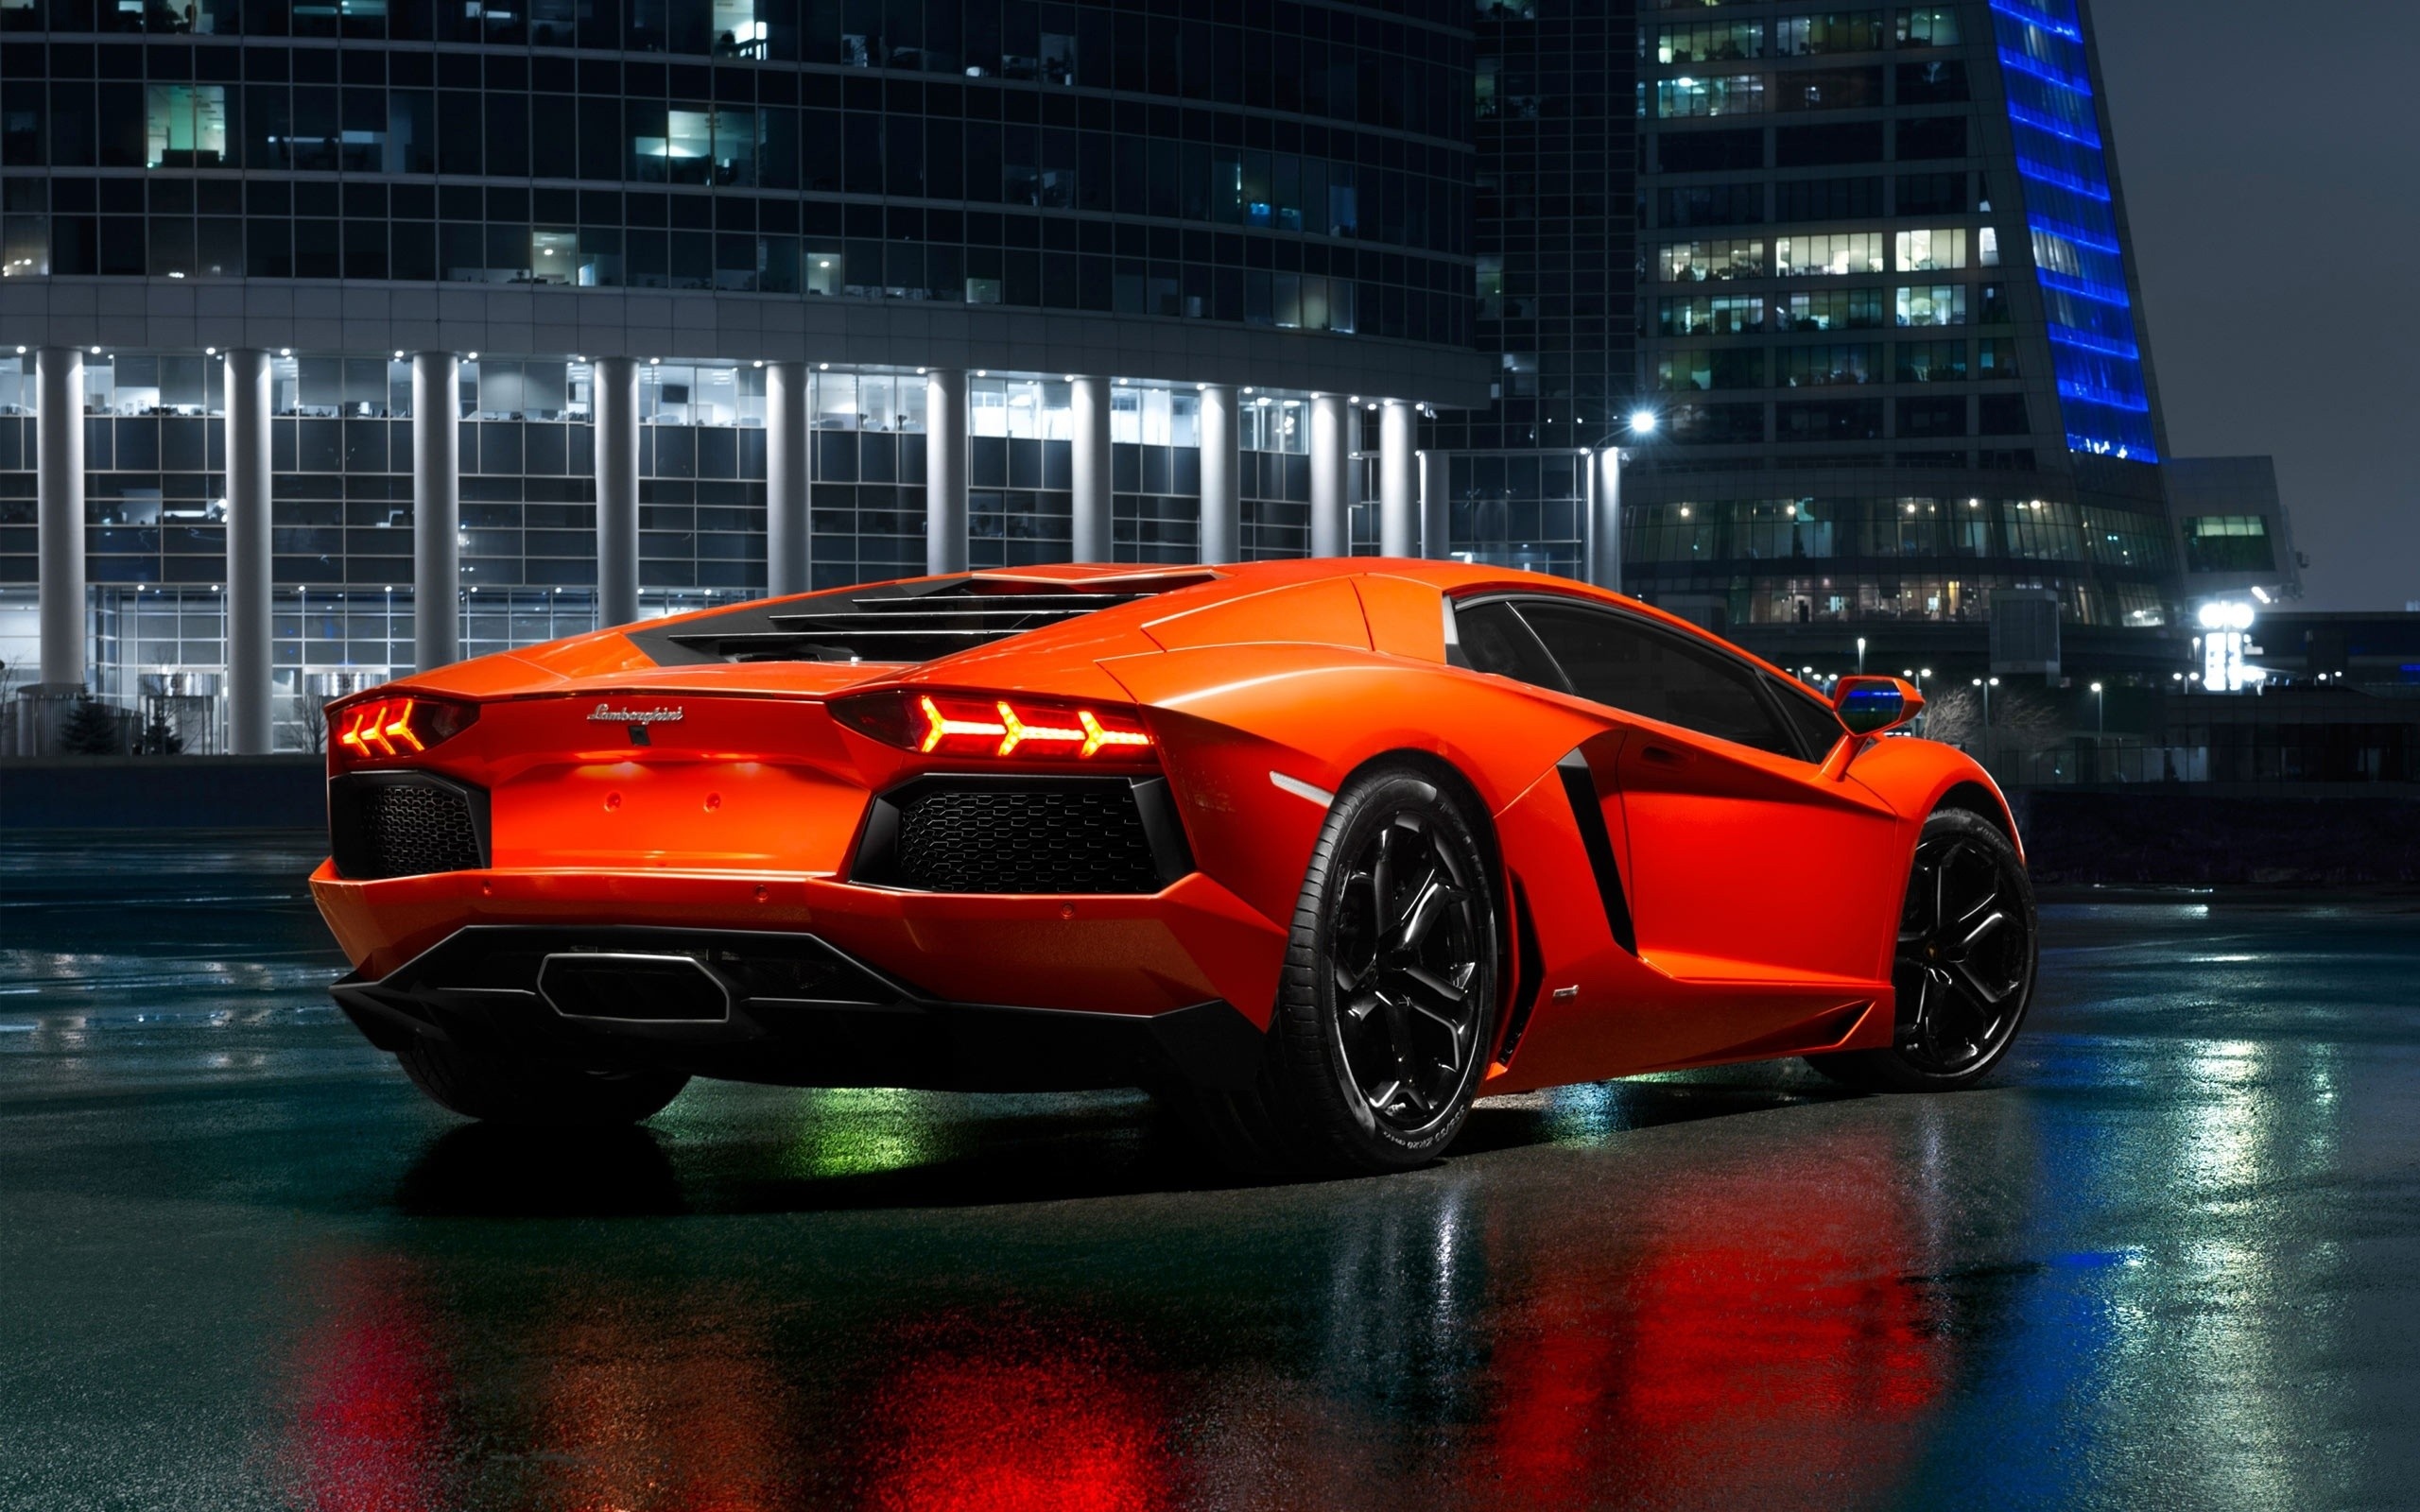 Lamborghini Aventador, Speed demon, Exquisite design, Supercar power, 2560x1600 HD Desktop